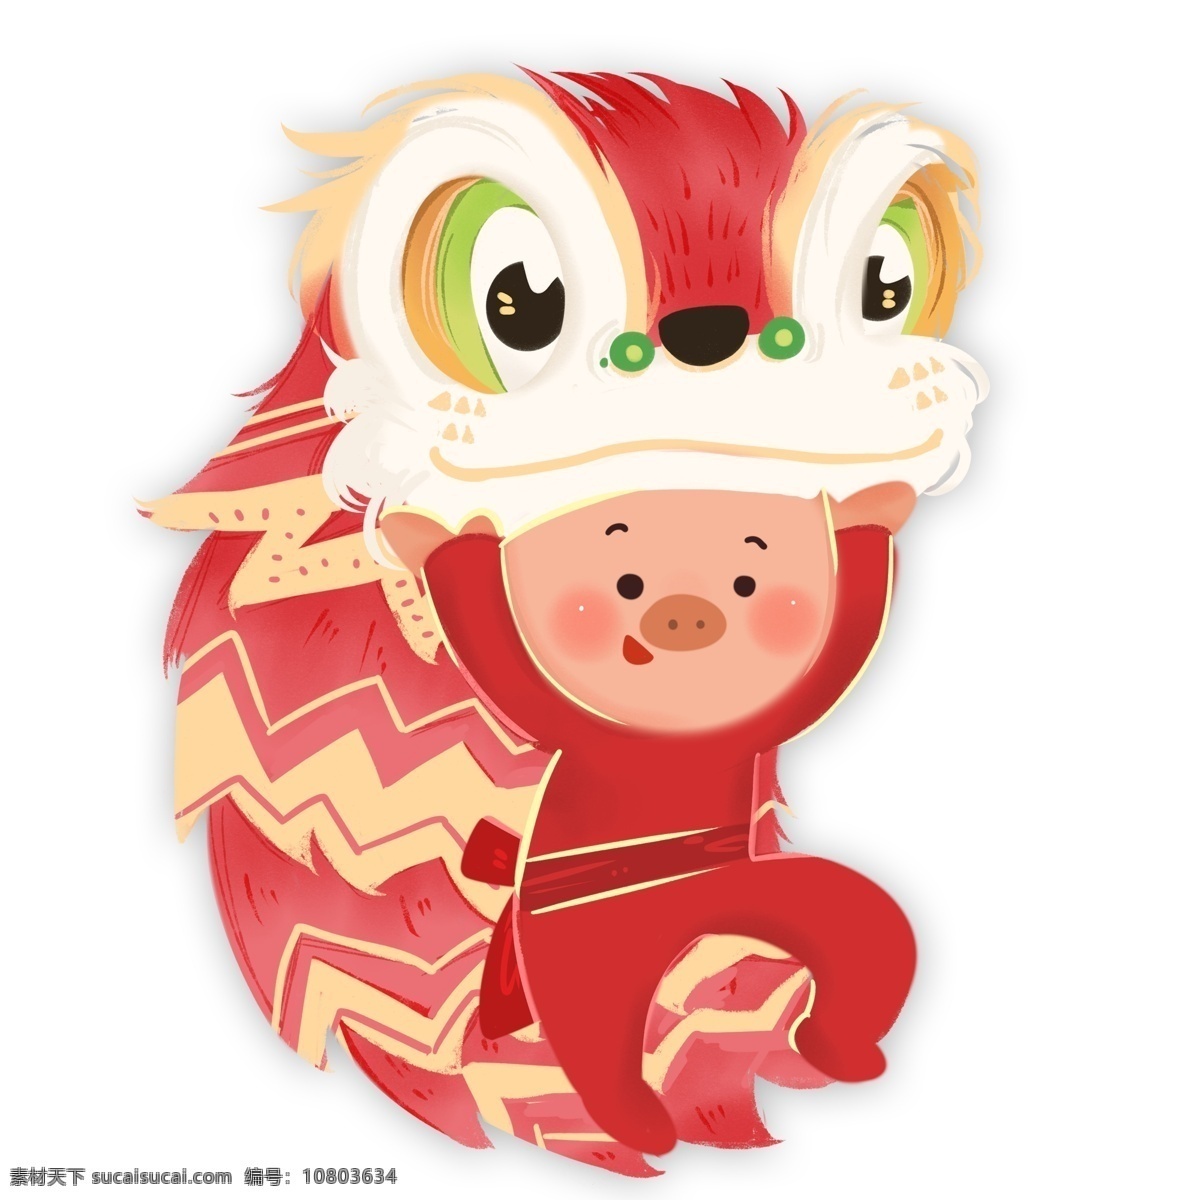 小 猪 舞 狮子 手绘 插画 卡通 中国风 春节 新春 舞狮 小猪 新年 猪年 2019年 小猪形象 猪年形象